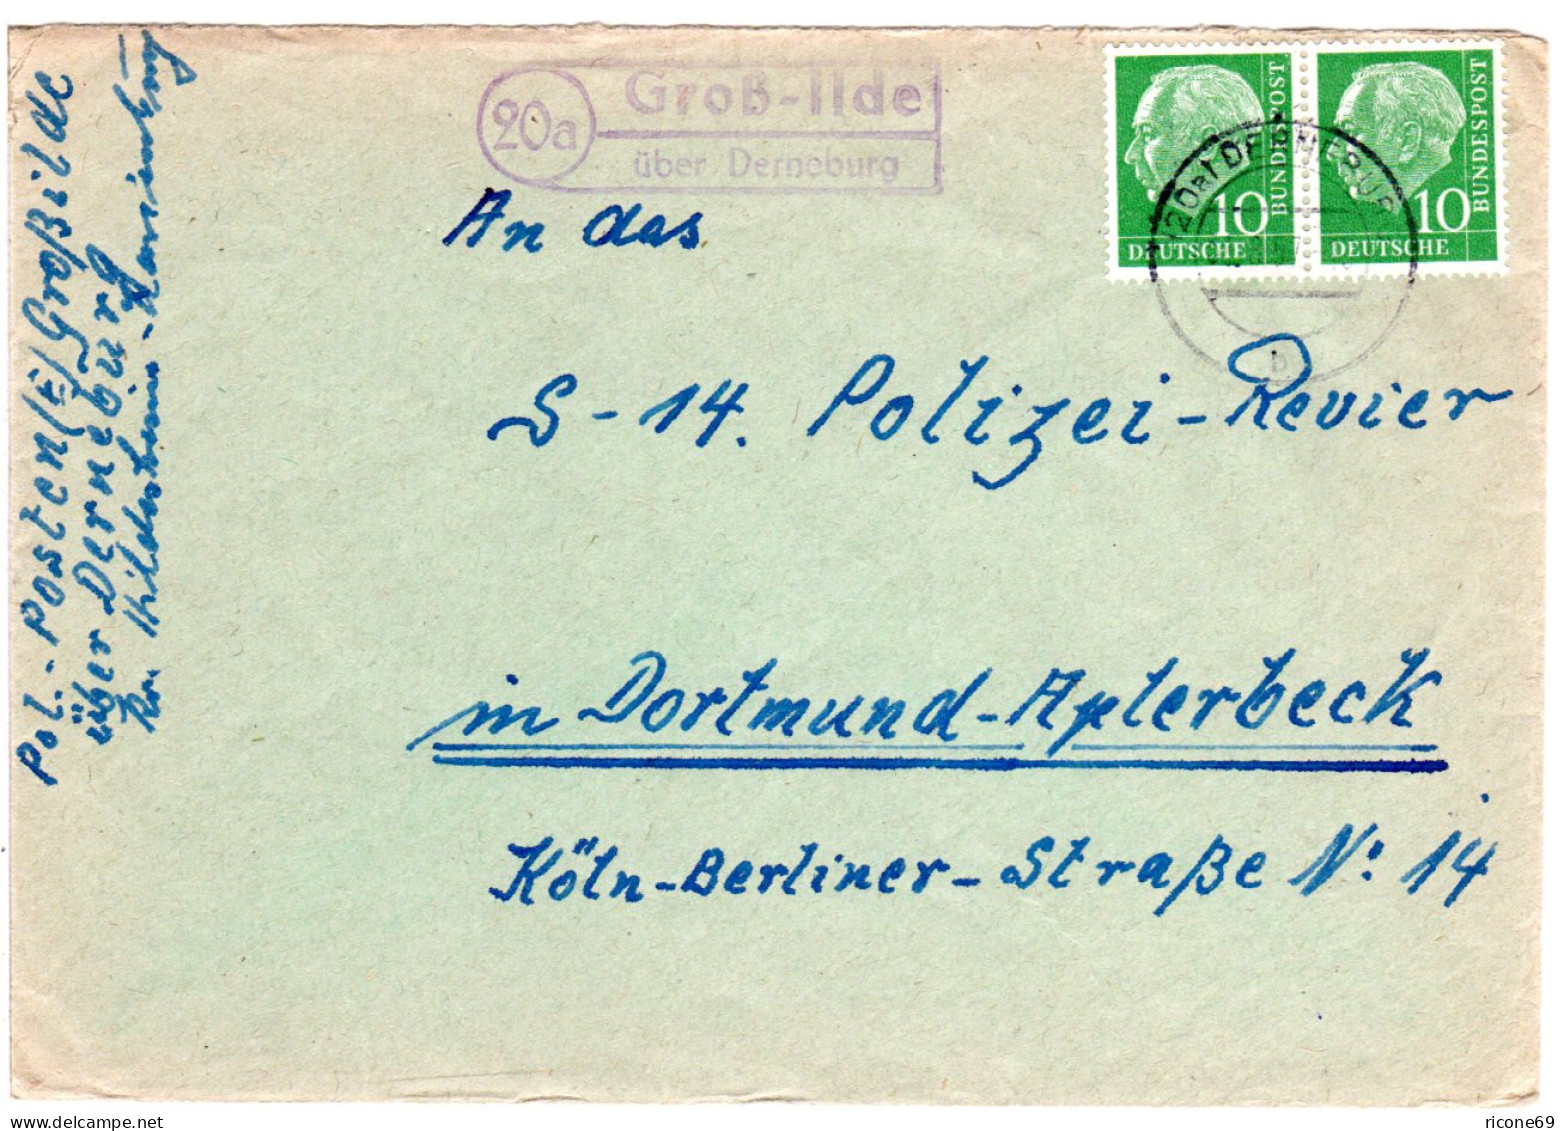 BRD 1957, Landpost Stpl. 20a GROSS-ILDE über Derneburg Auf Brief M. 2x10 Pf. - Storia Postale